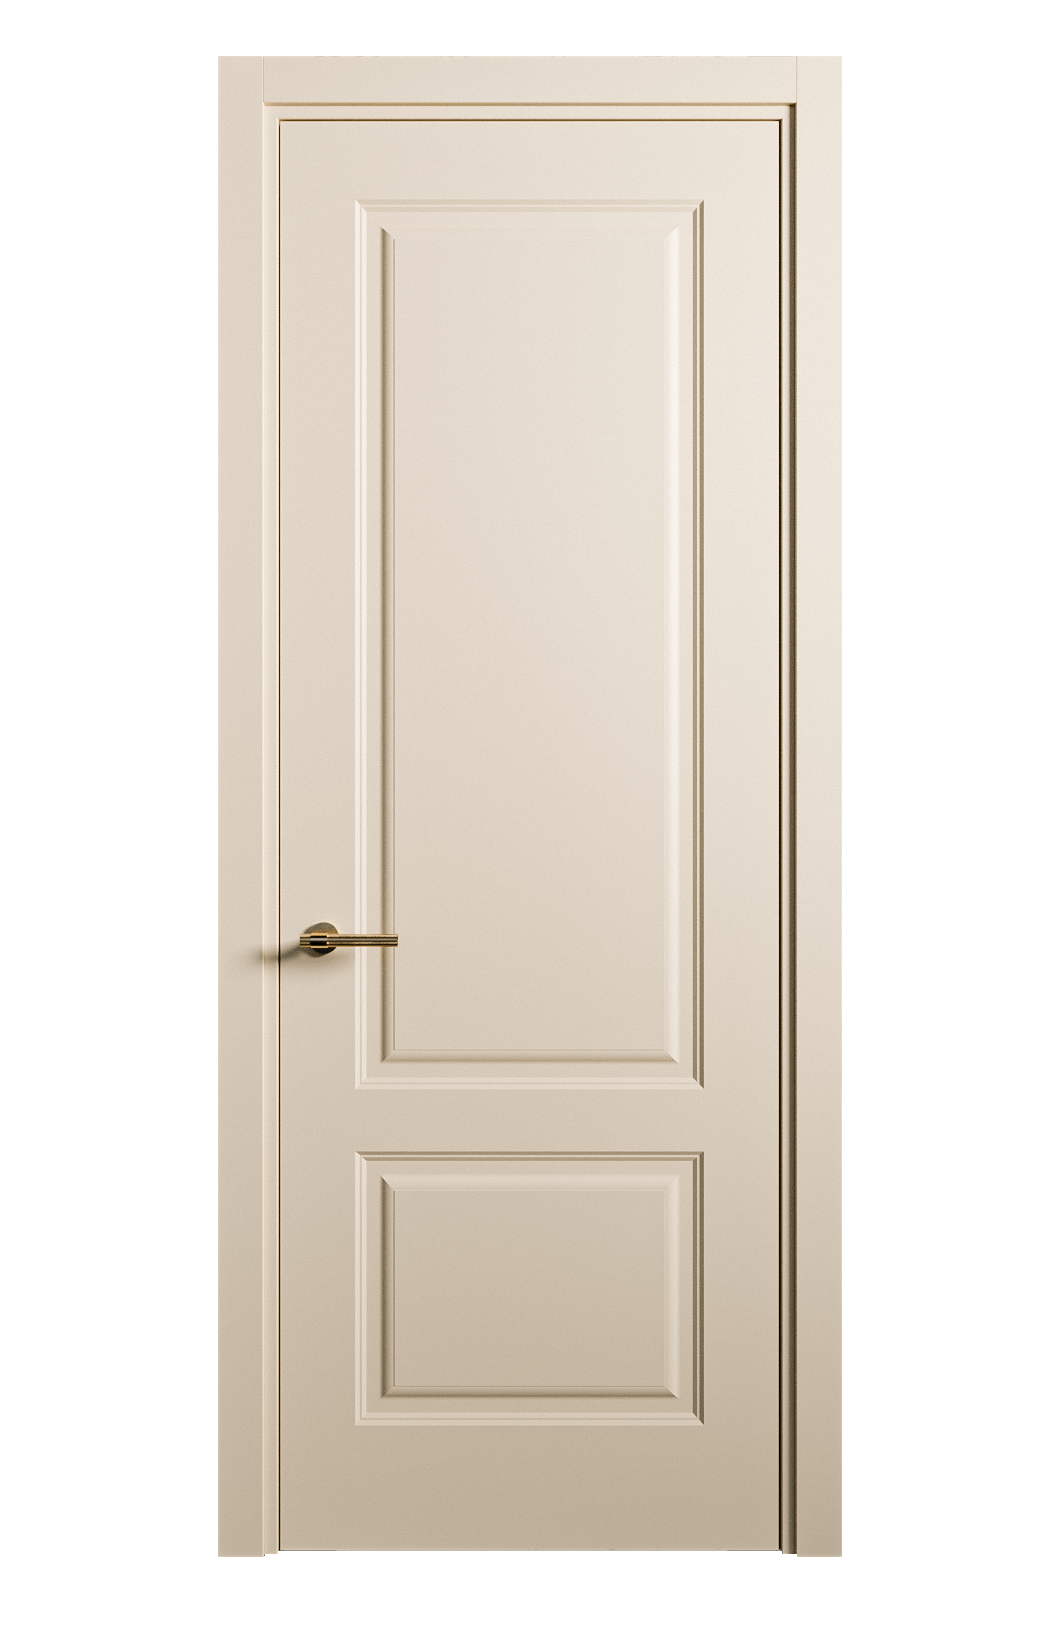 Межкомнатная дверь Вита-1 глухая эмаль ral 1015 26260